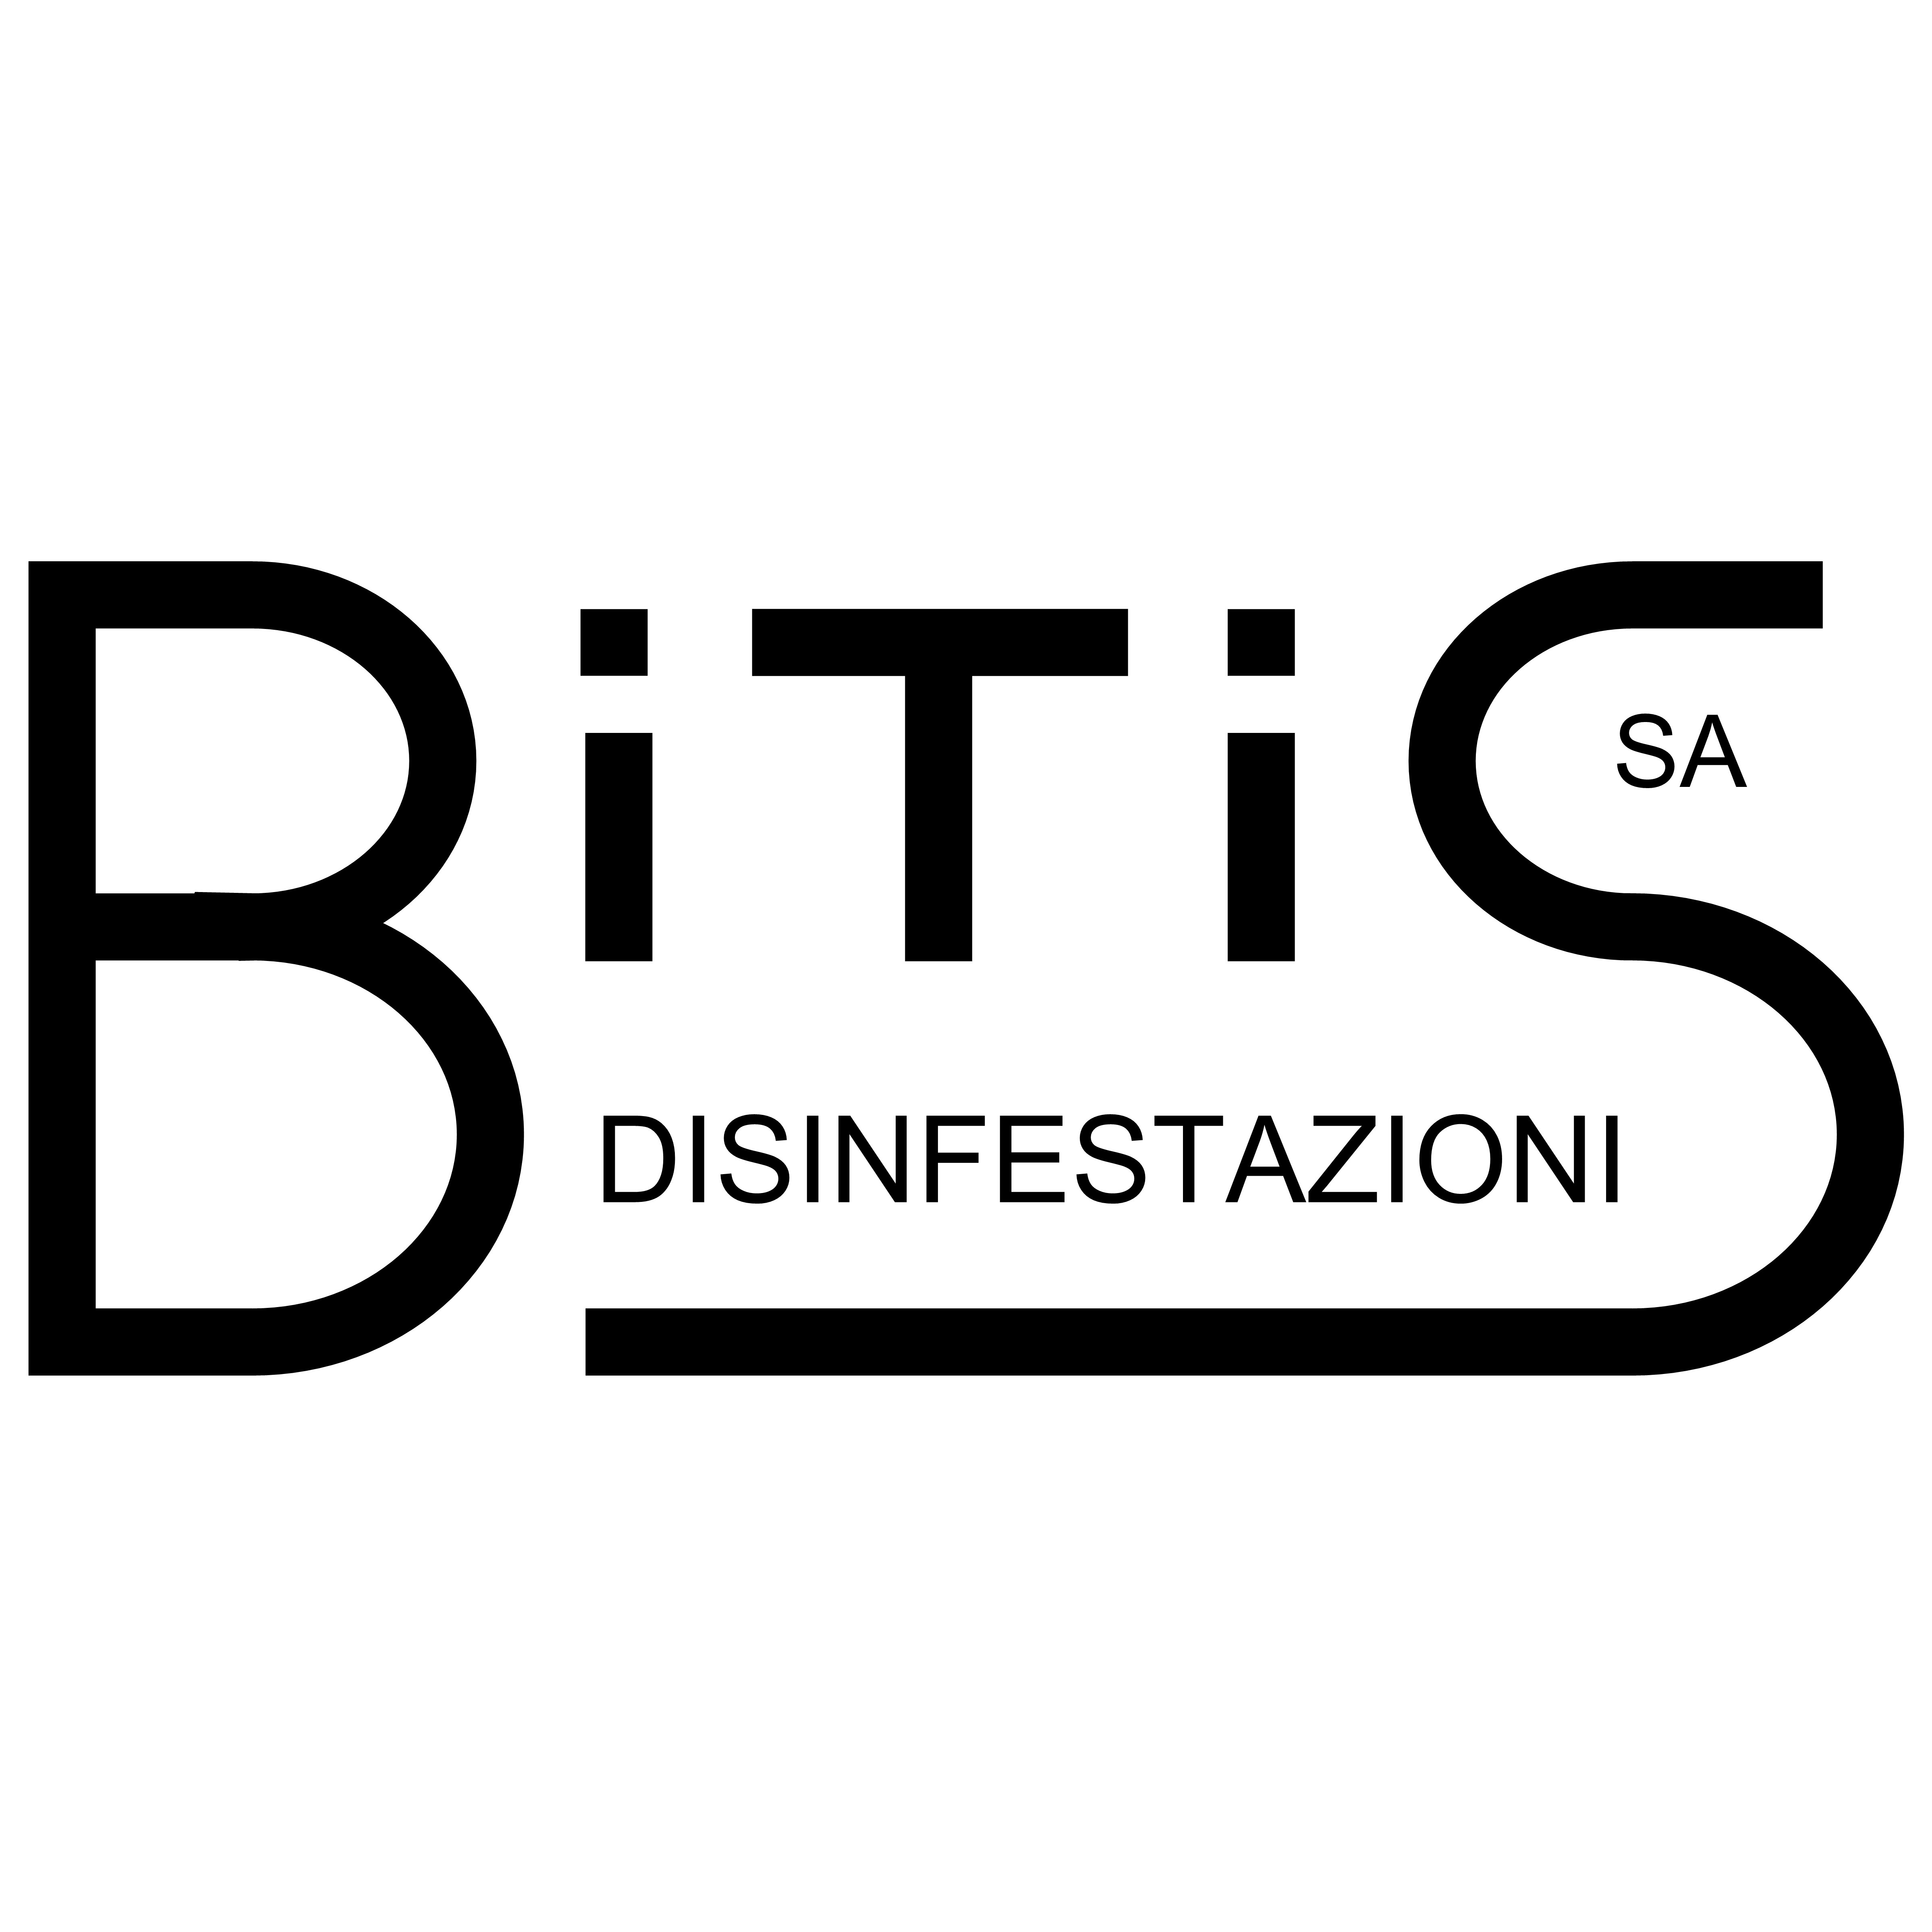 BITIS disinfestazioni SA - Pest Control Service - Lugano - 091 606 66 50 Switzerland | ShowMeLocal.com